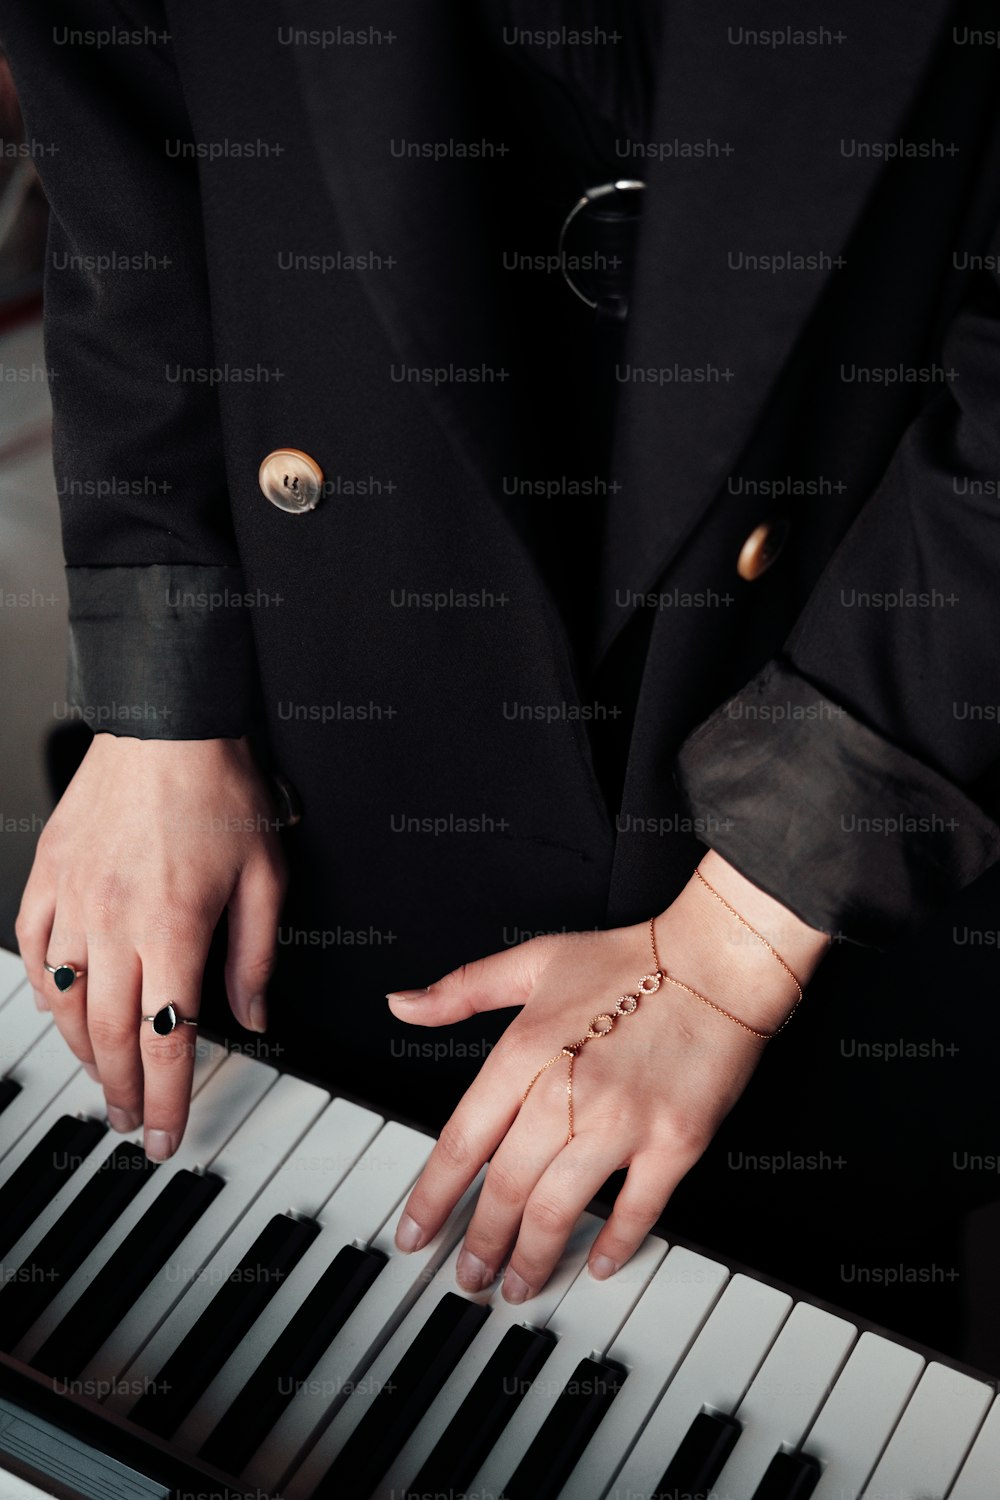 검은 양복을 입은 사람이 피아노를 연주하고 있다